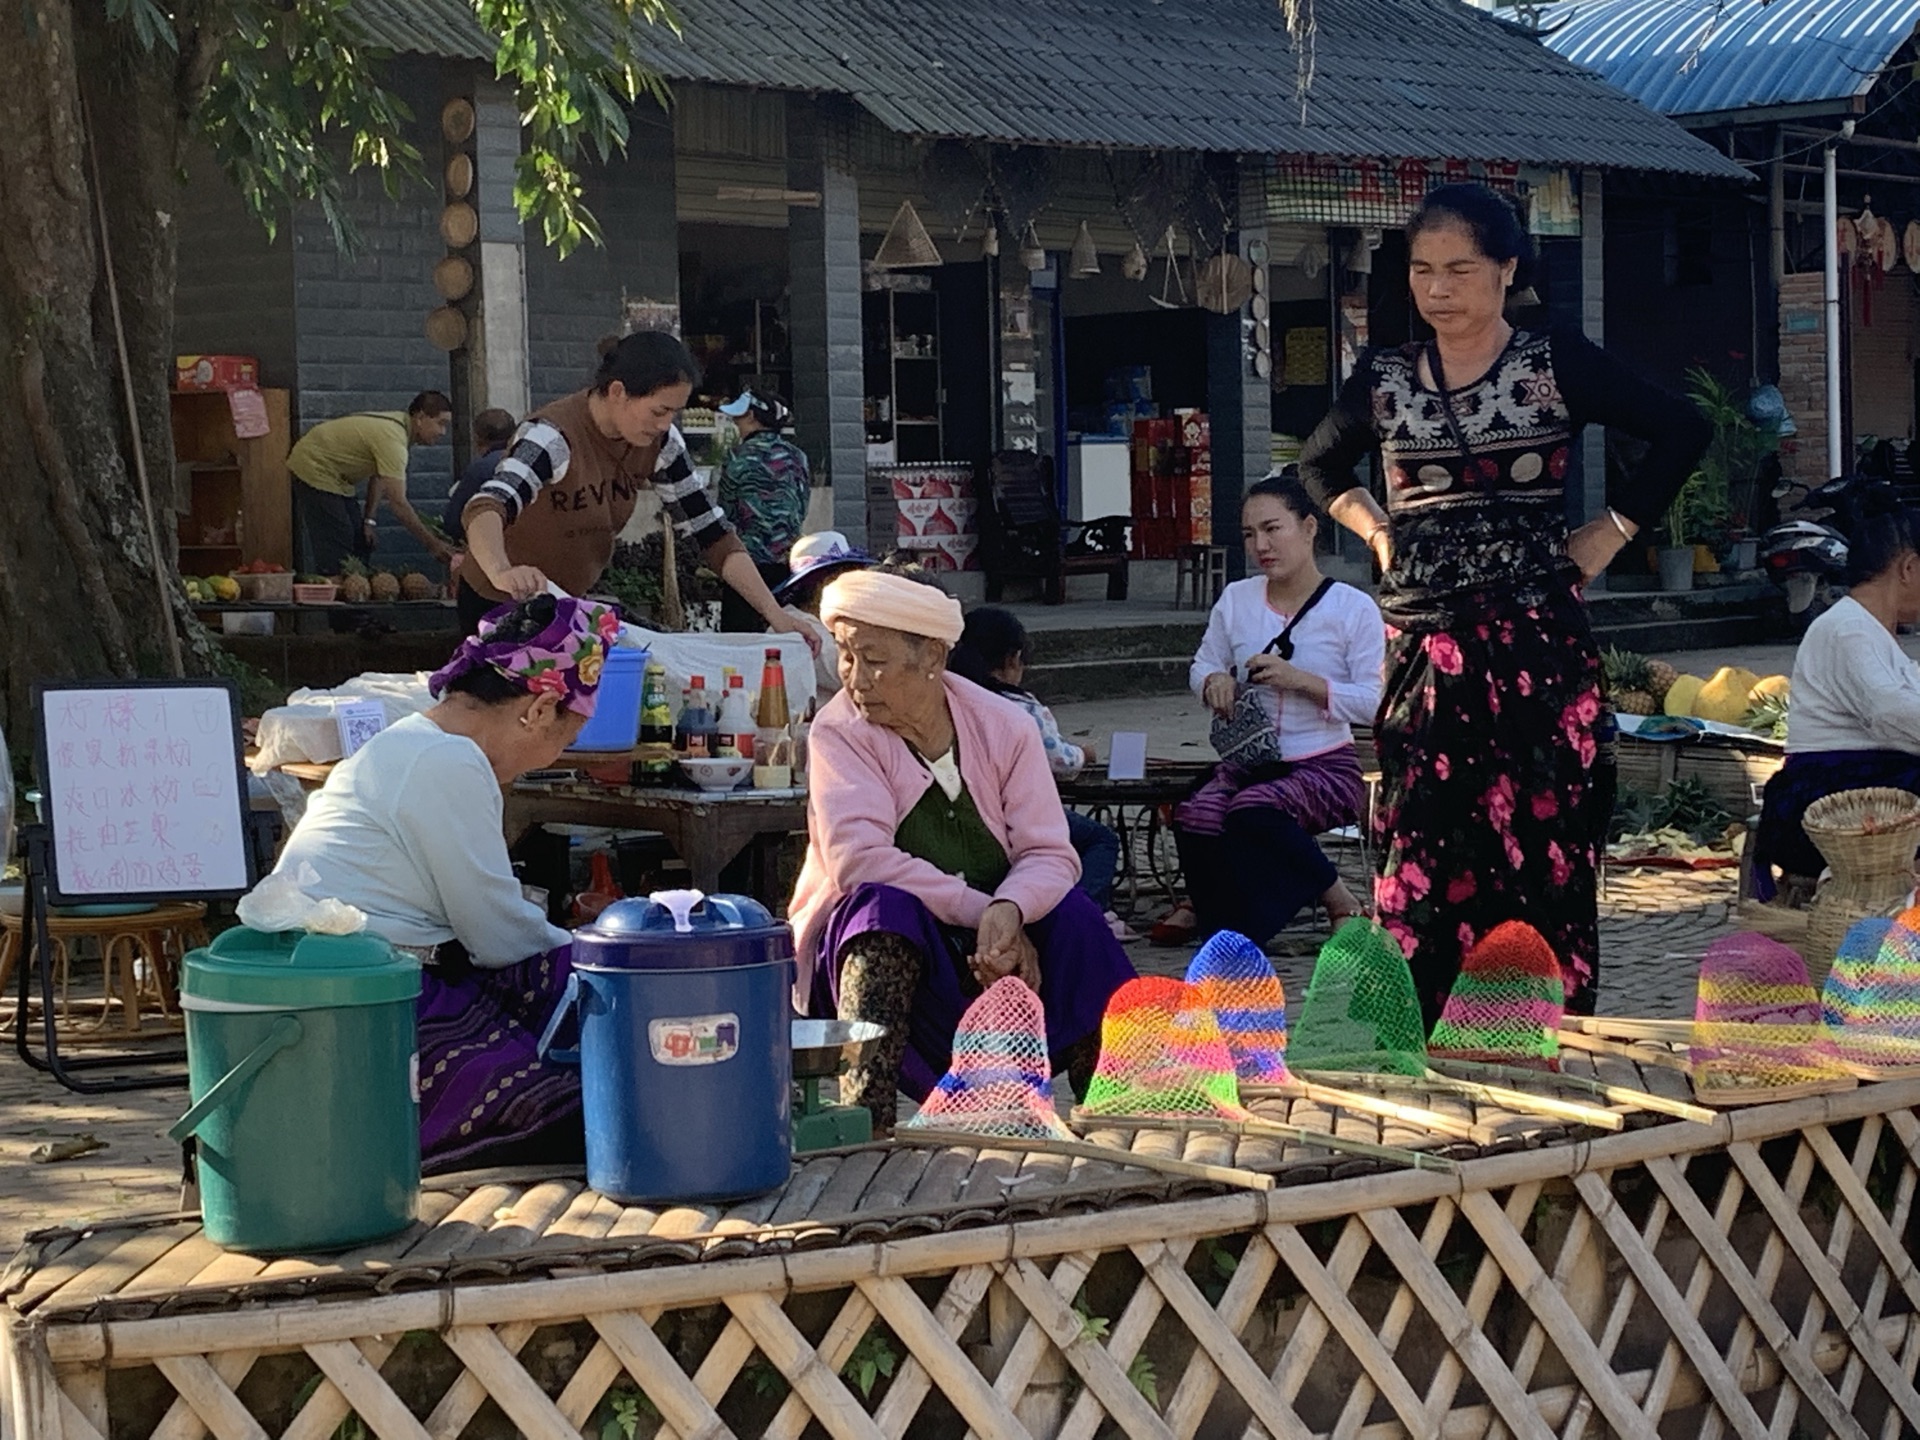 【聚焦COP15】走进千年古寨曼远村 感受最美乡愁 - 中国日报网